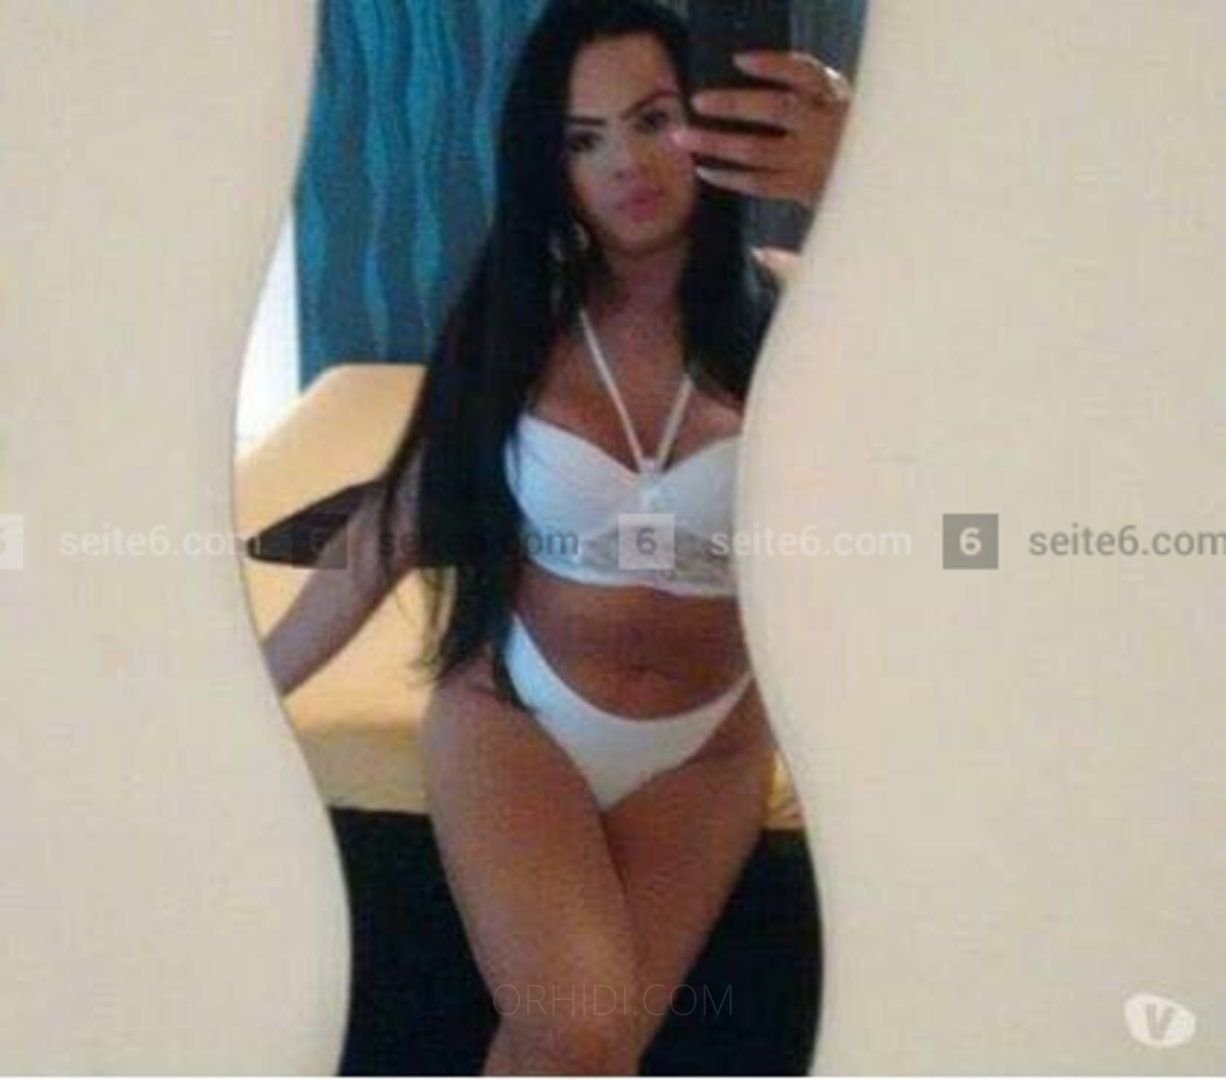 La migliore escort Latinoamericano a Assia vicino a te - model photo Trans Bruna